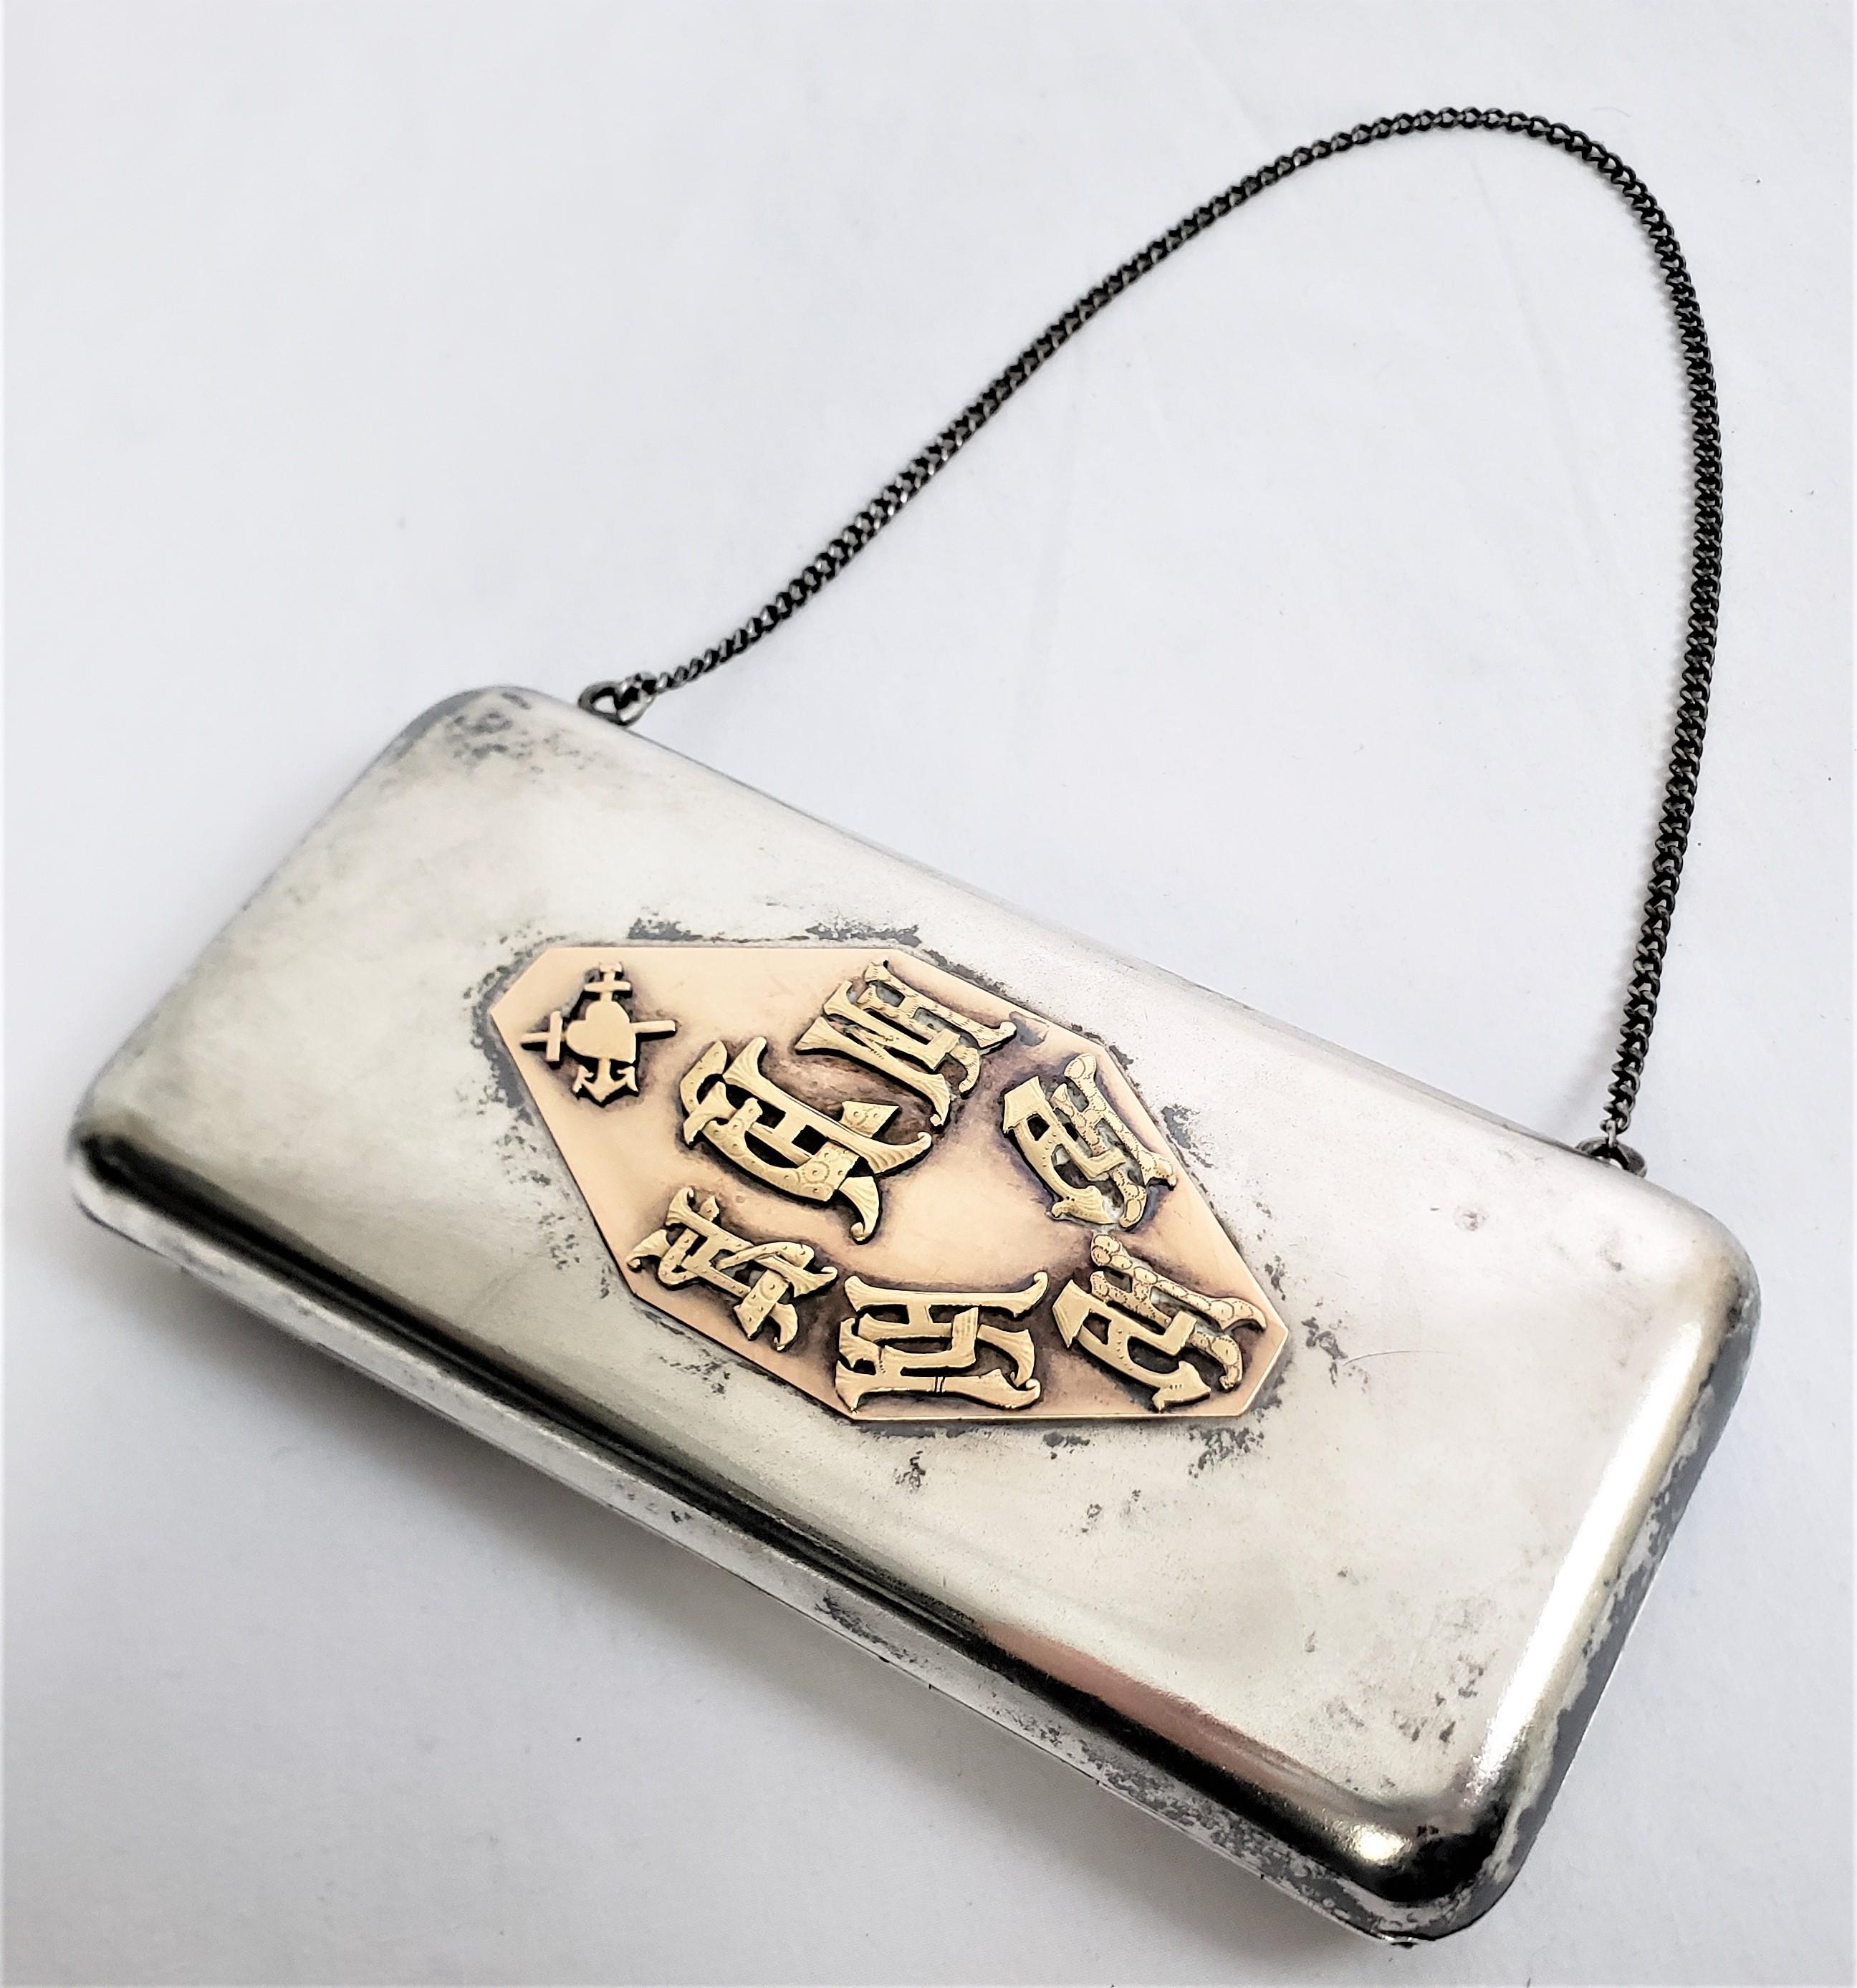 Diese antike Damen Clutch oder Abendtasche ist unsigniert, aber vermutlich stammt sie aus dem zaristischen Russland und wurde um 1900 im traditionellen imperialistischen Stil gefertigt. Das Gehäuse selbst und die Kette bestehen aus 840er Silber mit